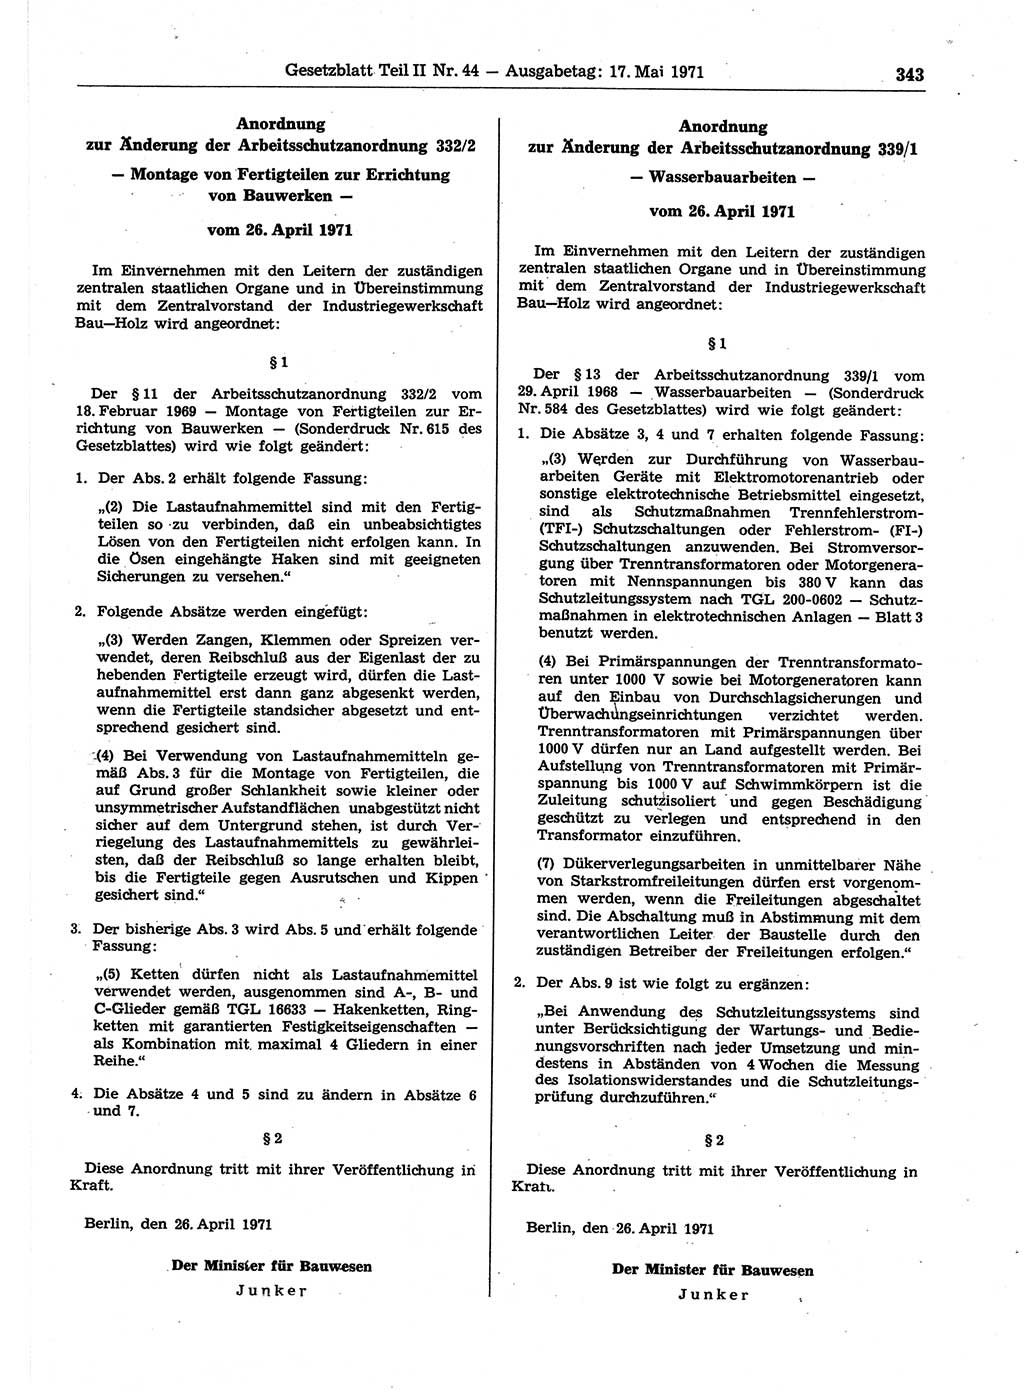 Gesetzblatt (GBl.) der Deutschen Demokratischen Republik (DDR) Teil ⅠⅠ 1971, Seite 343 (GBl. DDR ⅠⅠ 1971, S. 343)